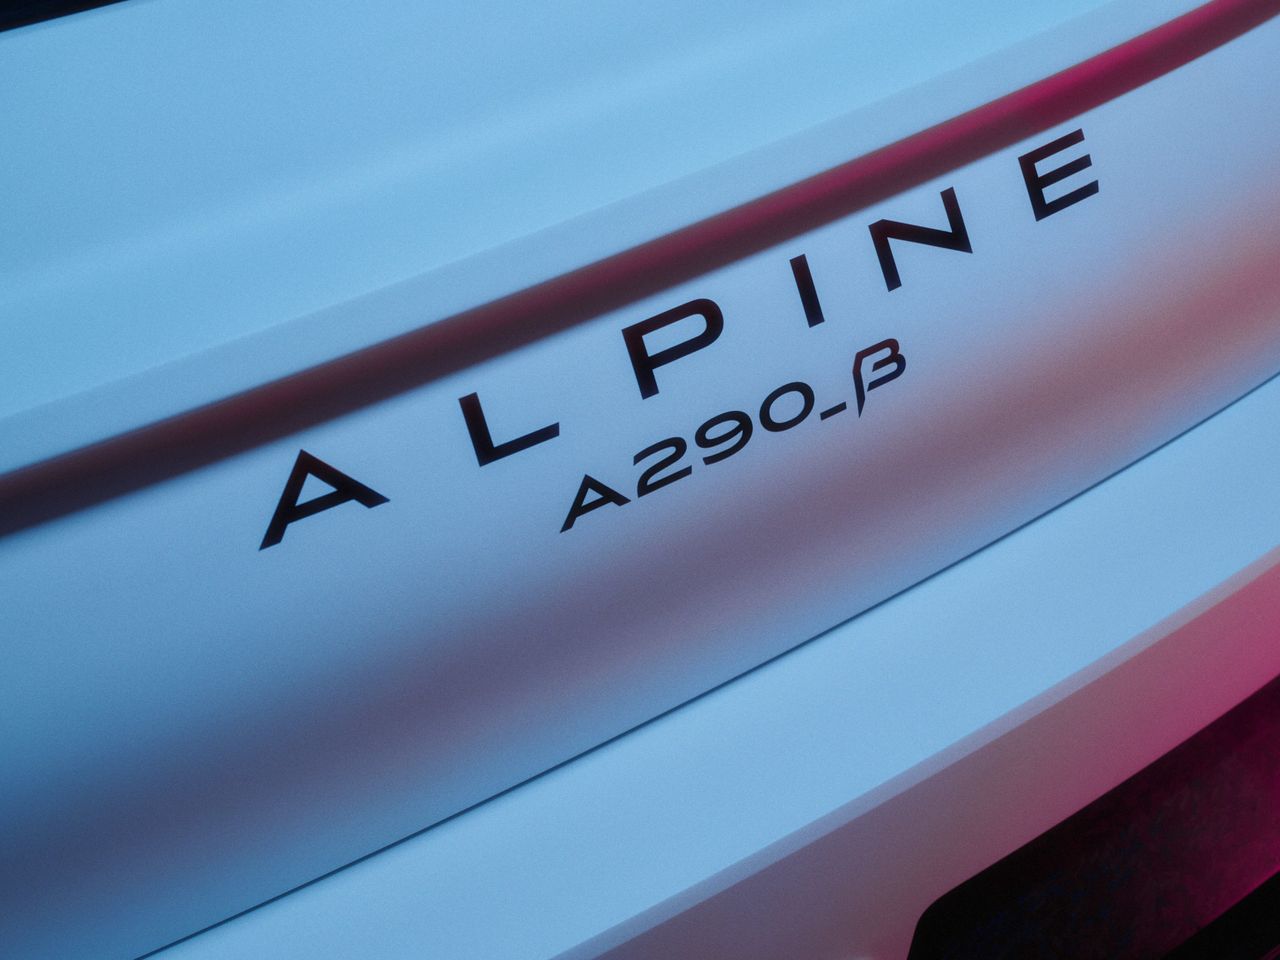 Alpine A290_β - Francuzi pokażą "wersję beta" swojego nowego modelu